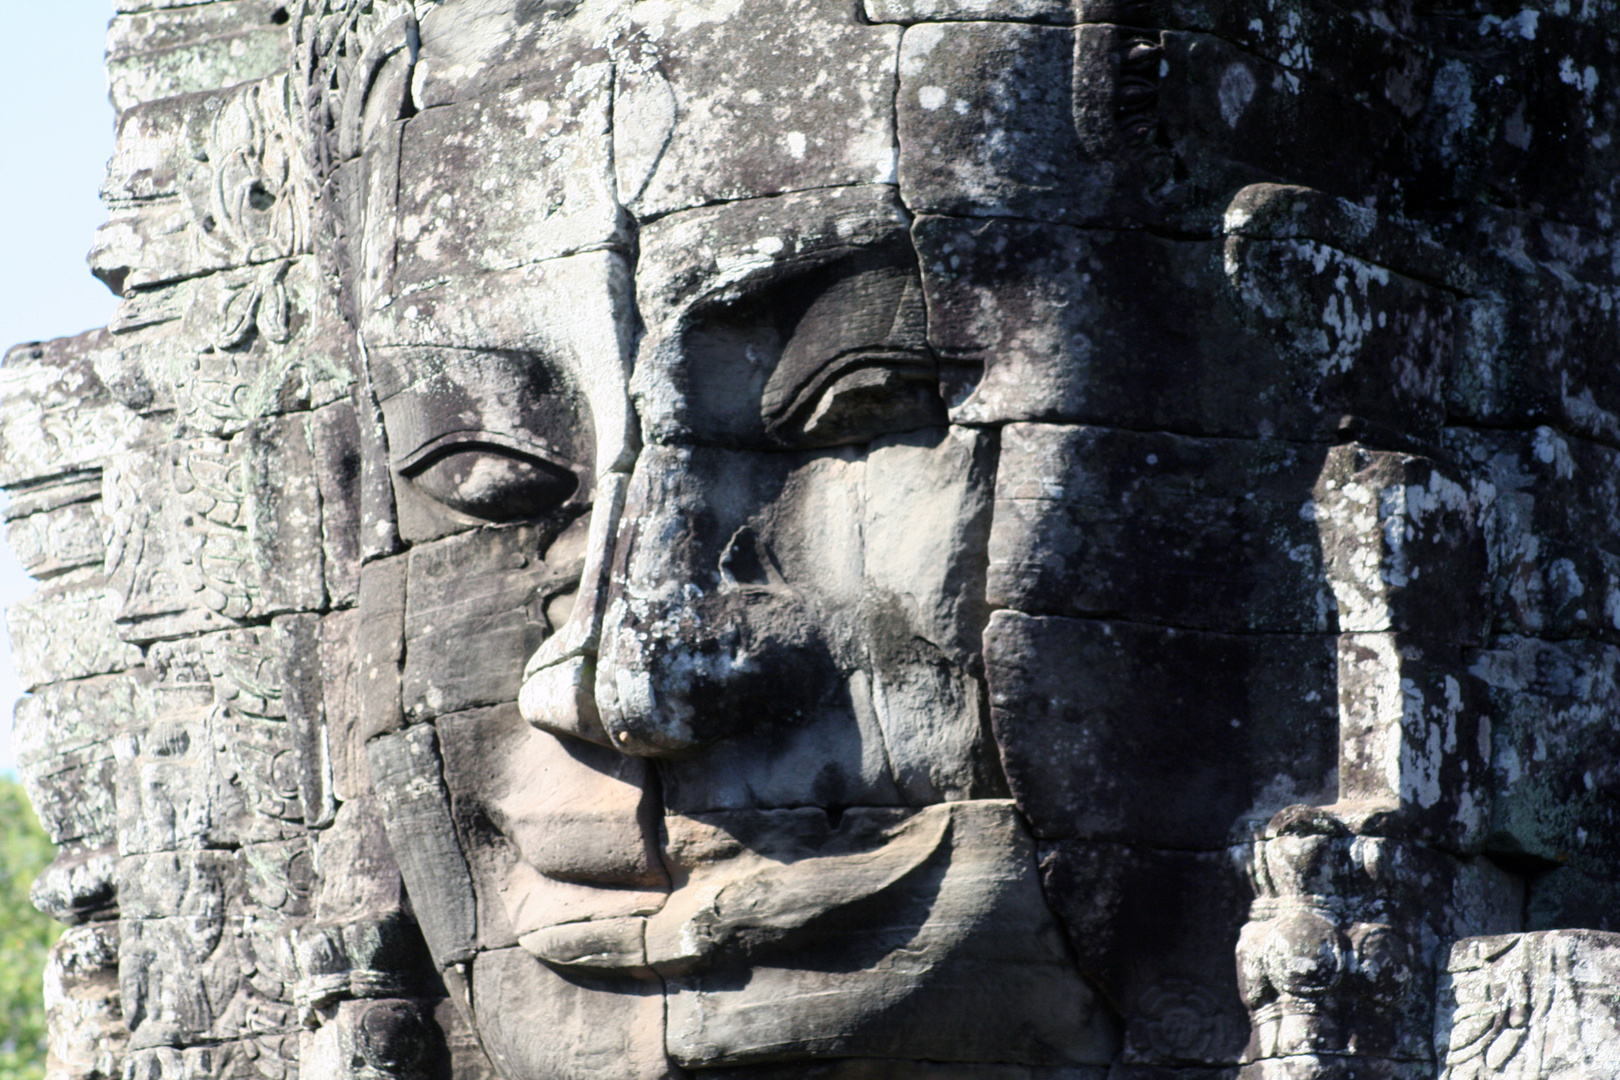 Angkor Tom / Angkor Watt Statue